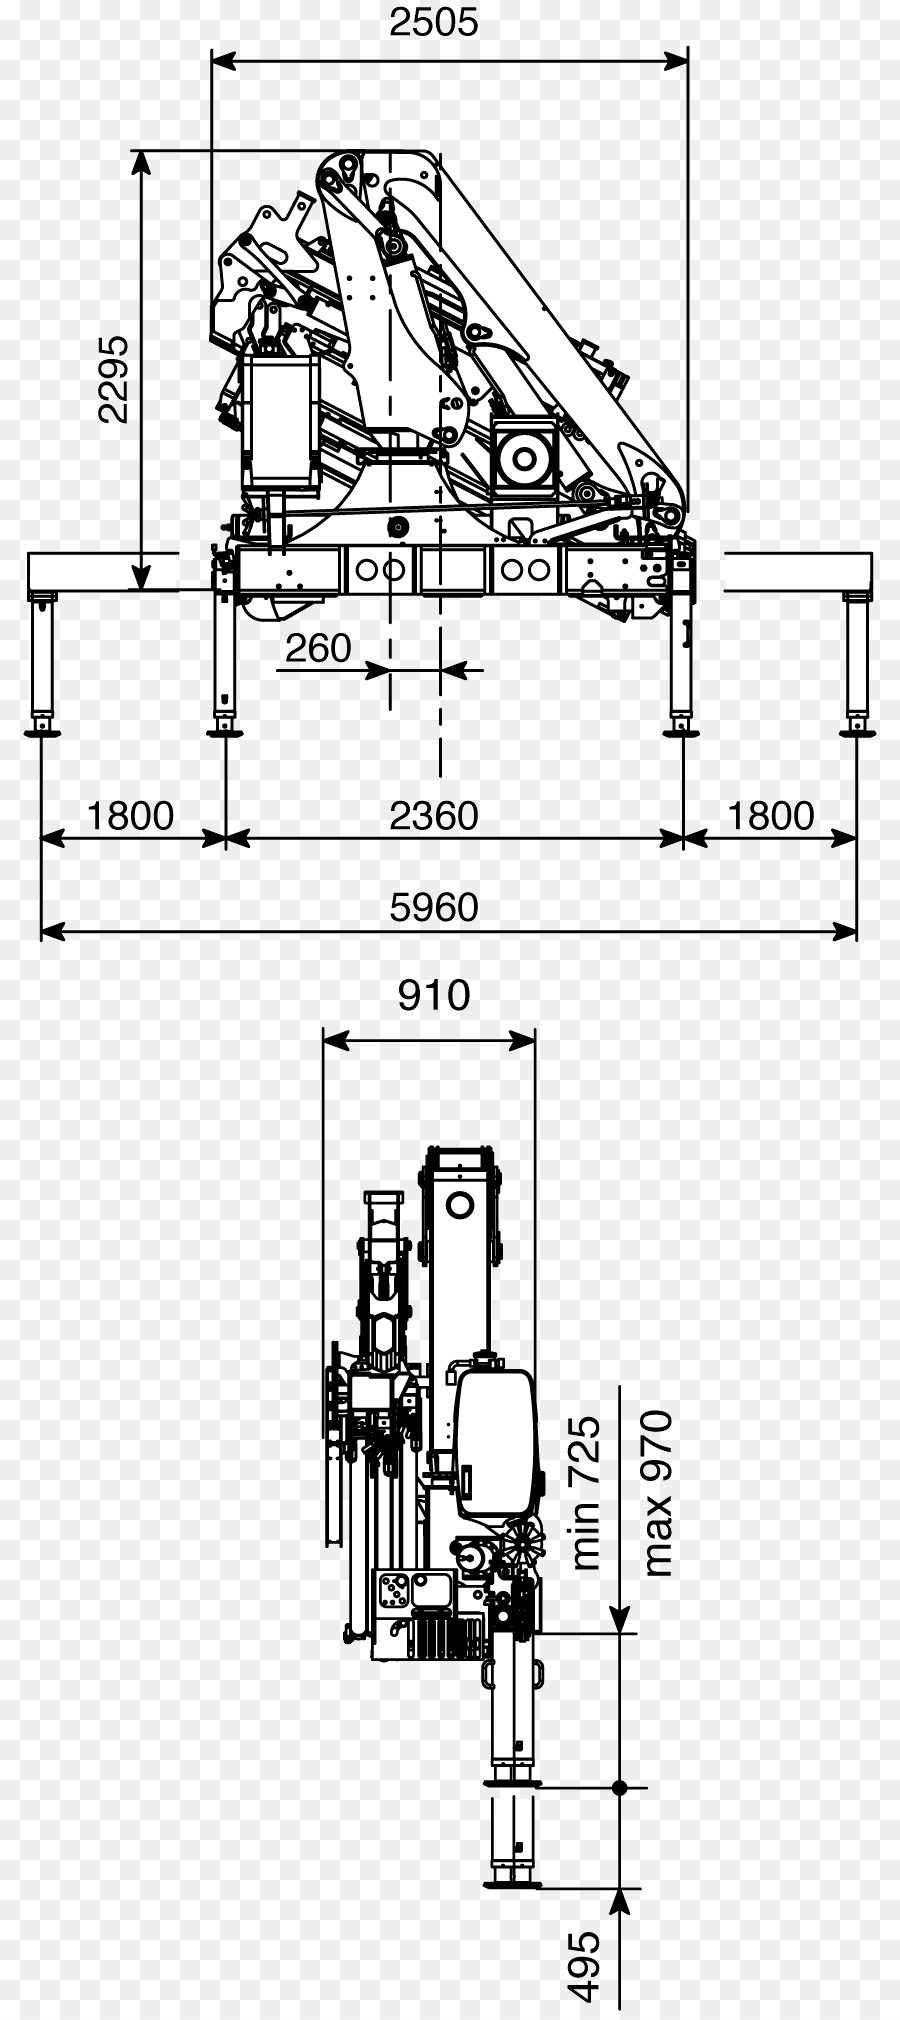 Kran Technische Zeichnung EFFER S. P. A. Architectural engineering Maschine - Kran